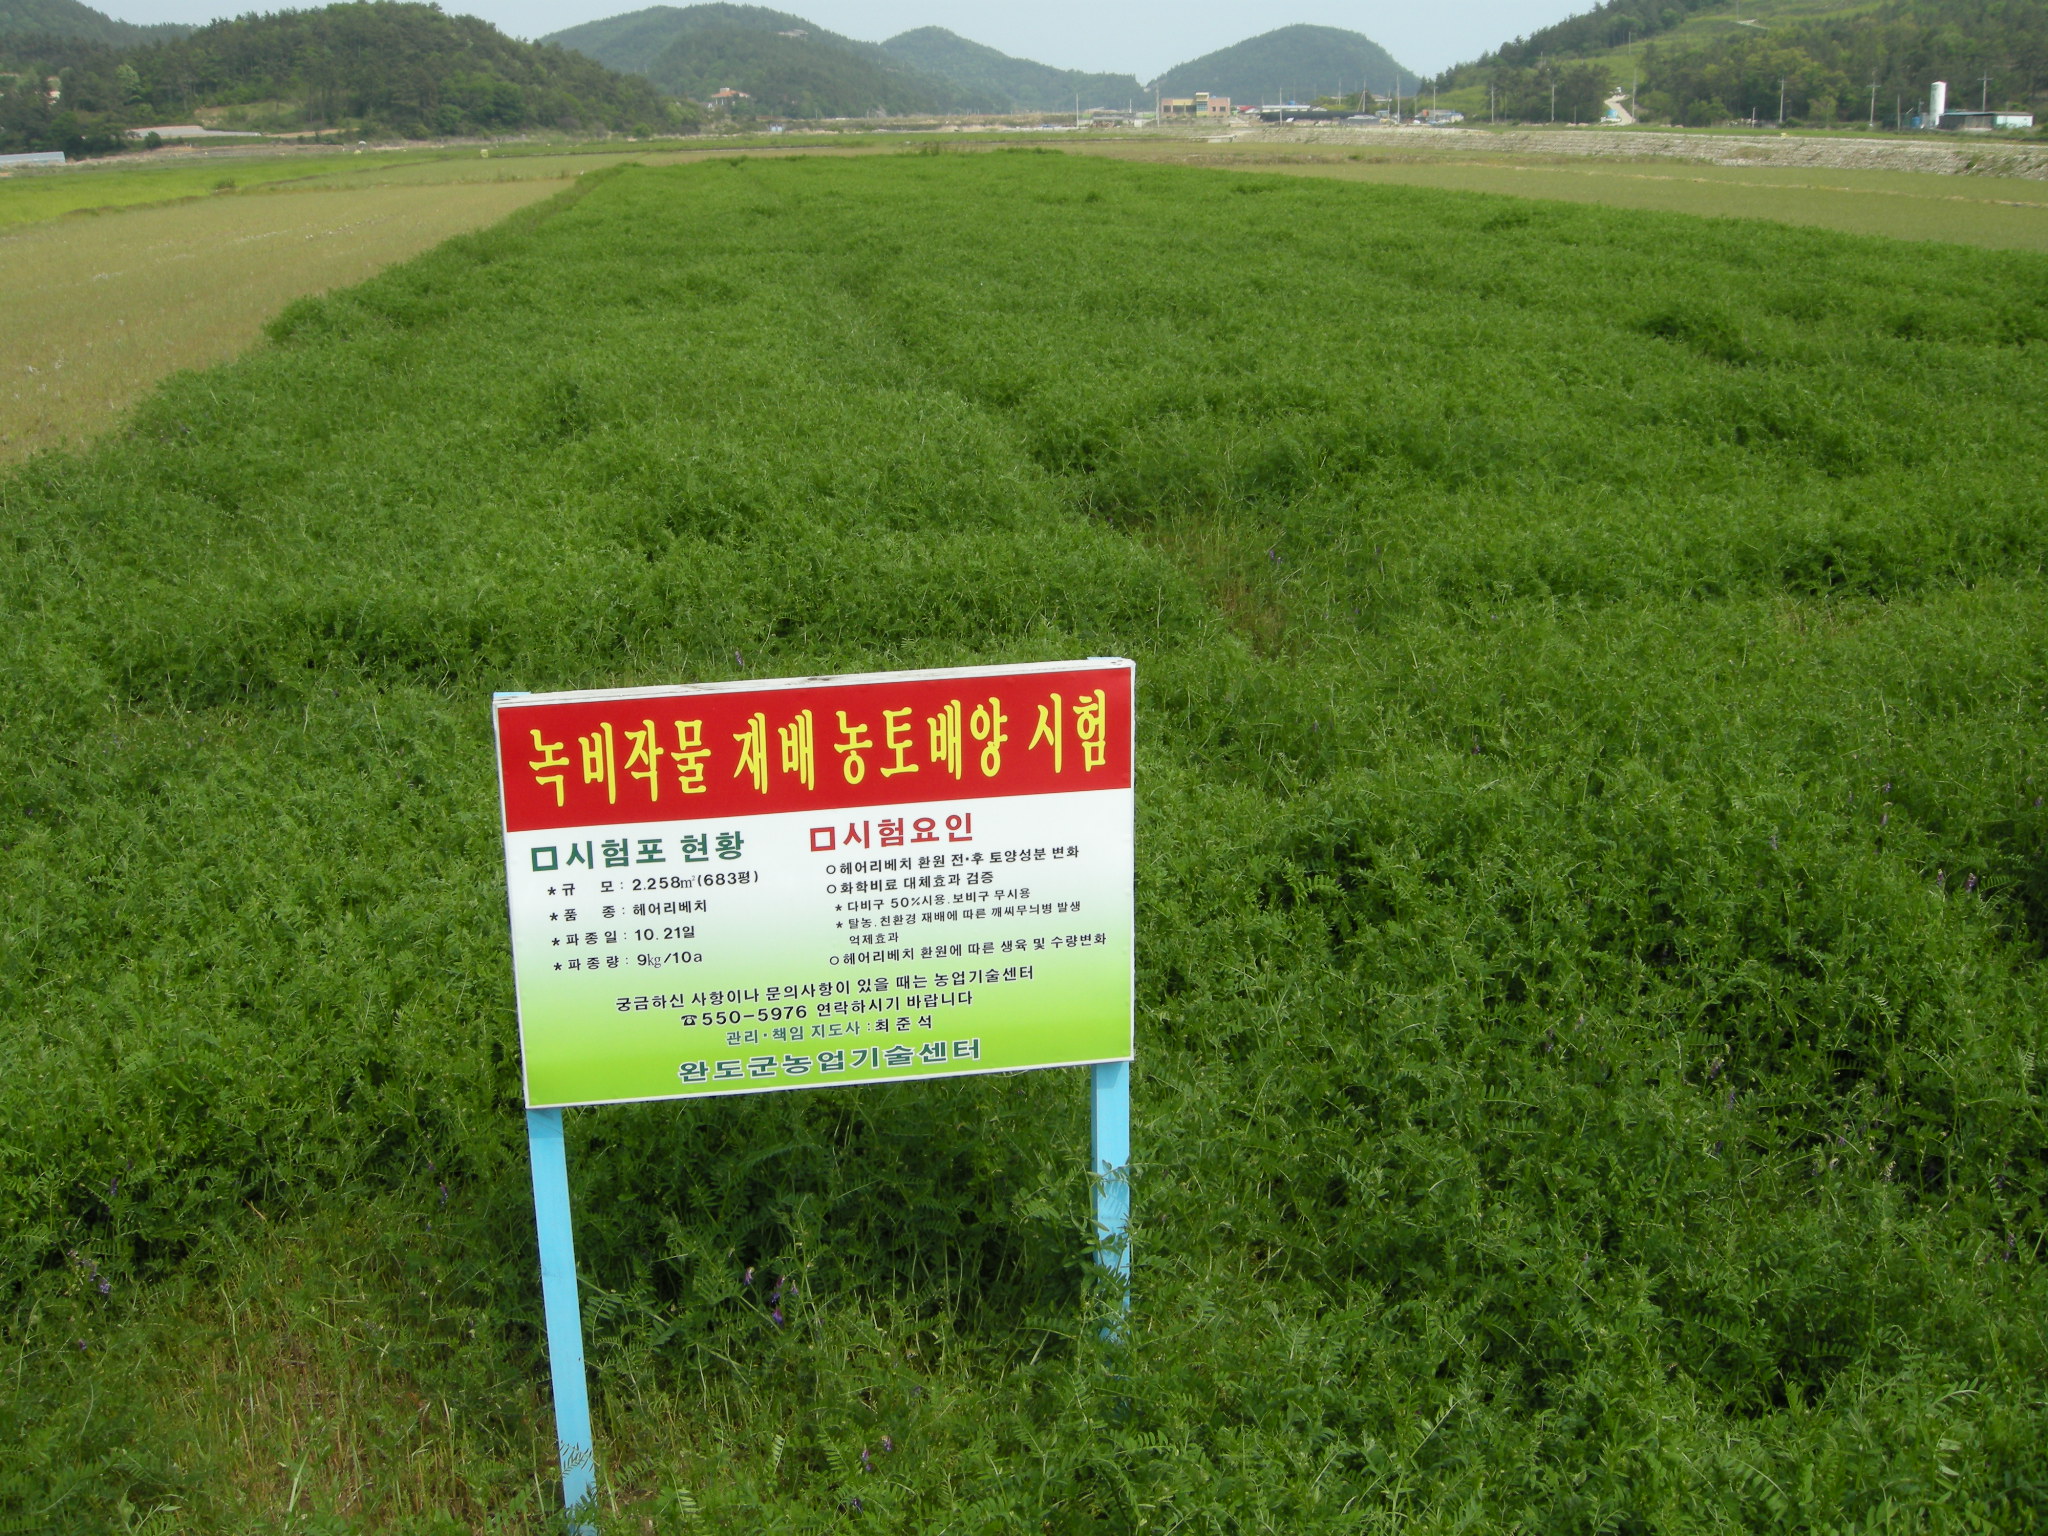 고품질 쌀 생산을 위한 농토배양에 총력